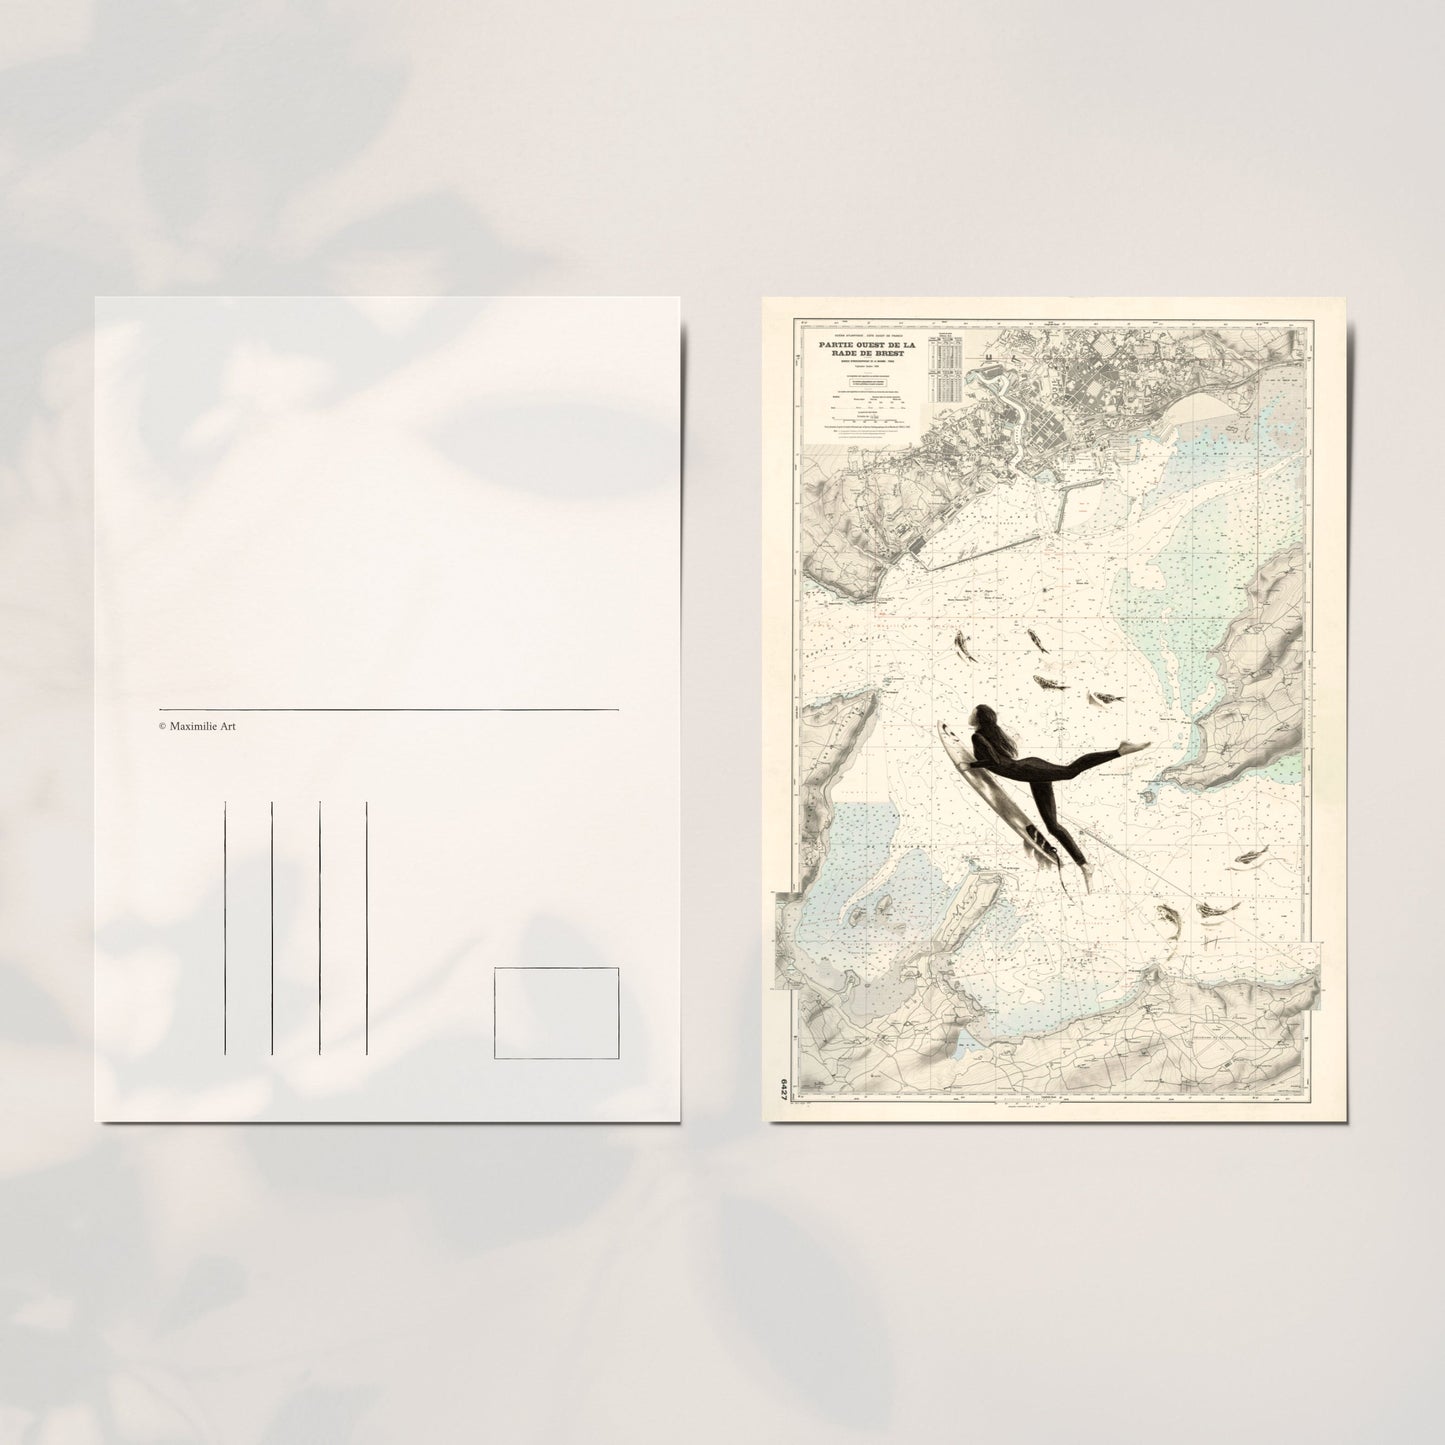 LA SURFEUSE - Carte postale